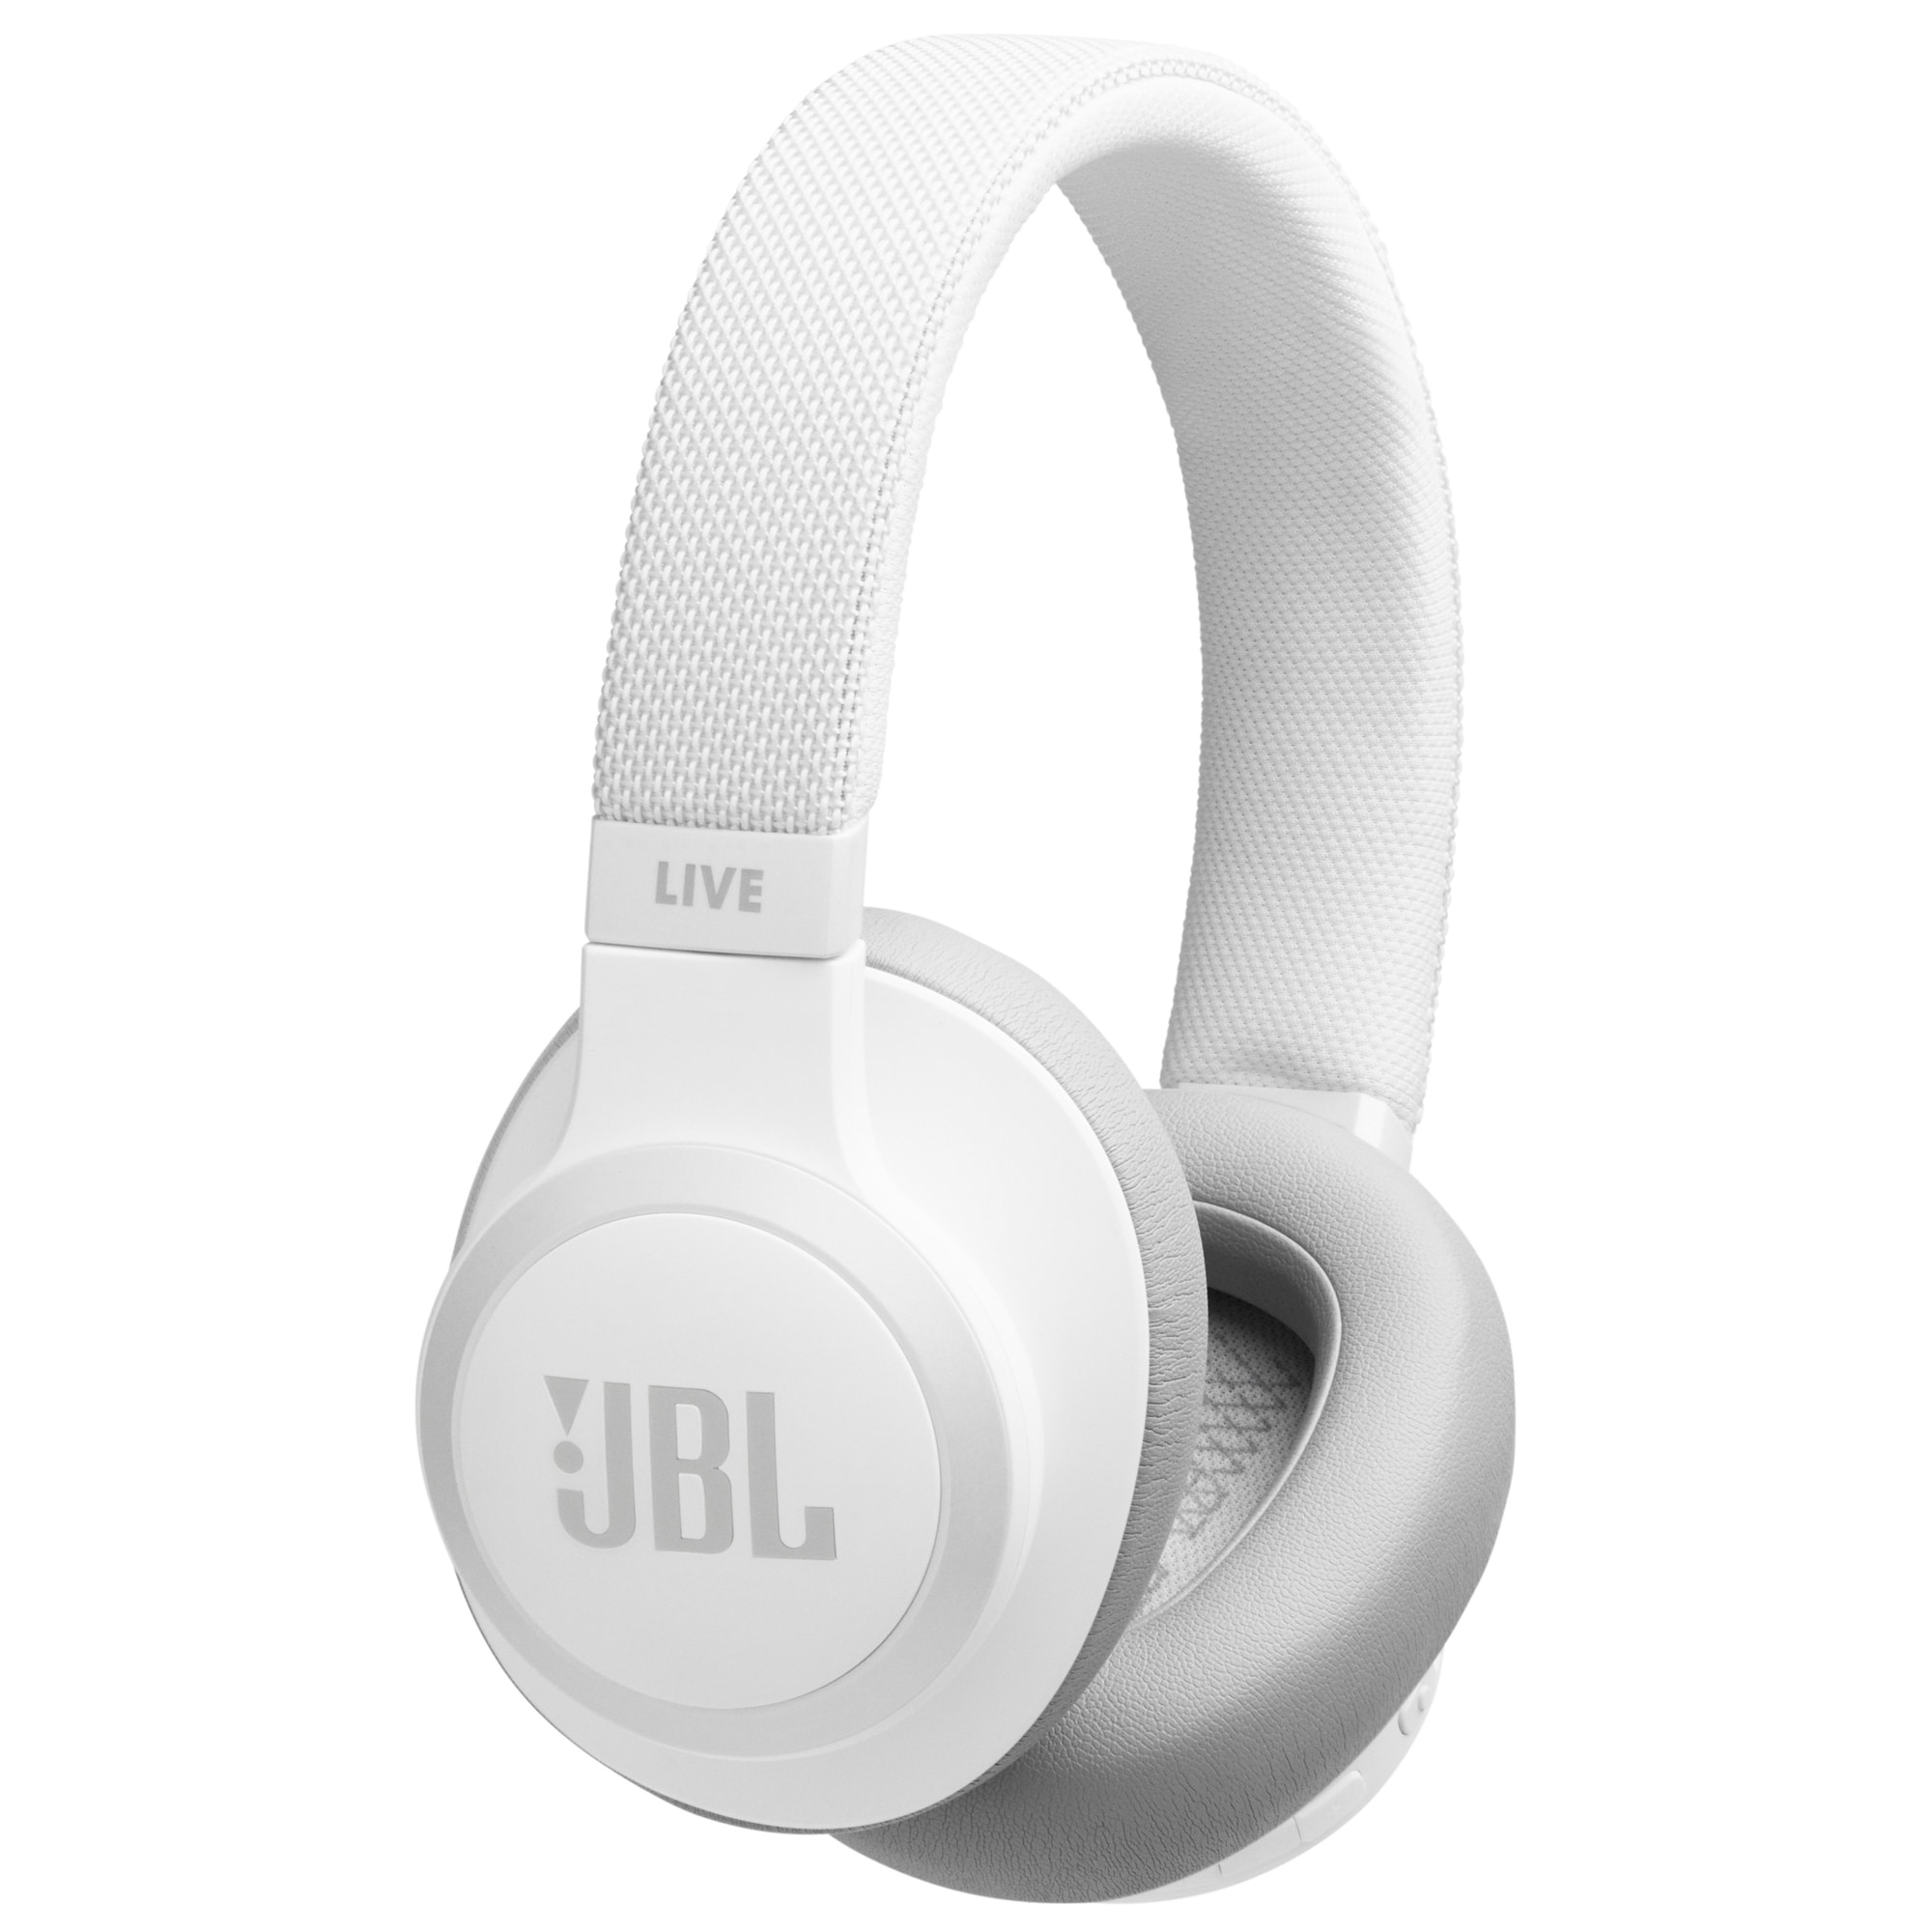 JBL LIVE 650BT trådlösa around-ear hörlurar (vit) - Hörlurar - Elgiganten